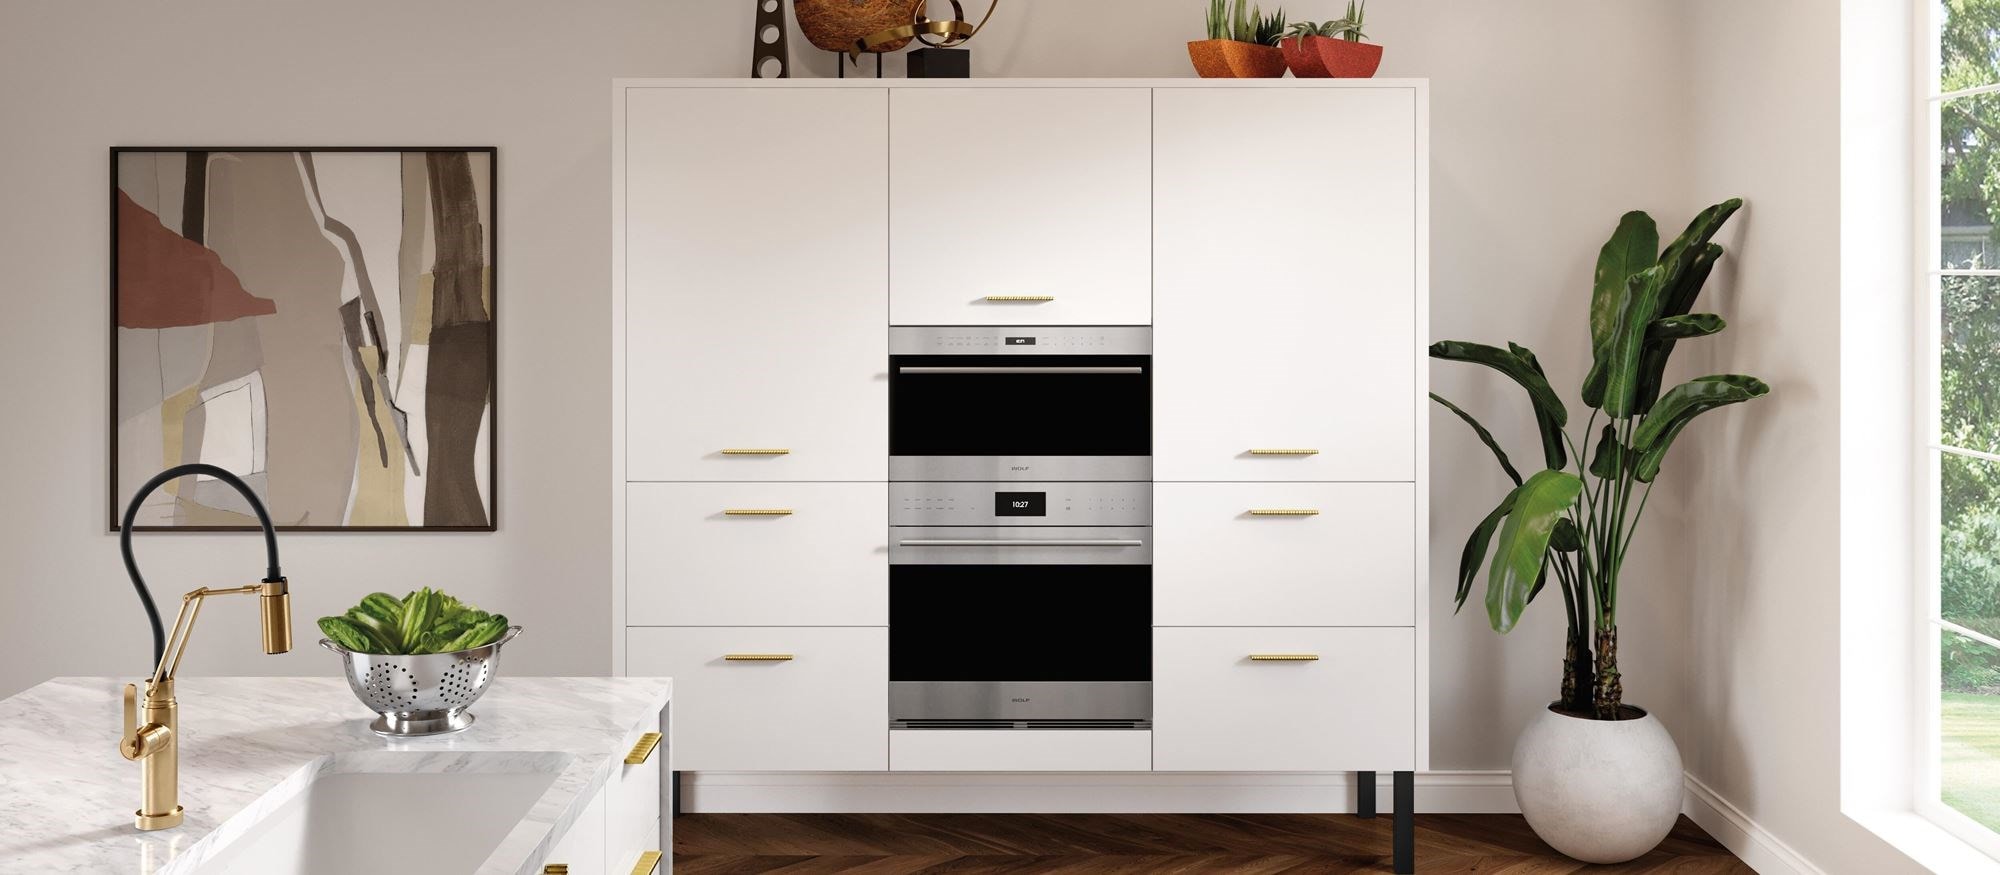 Microondas incorporados Wolf disponibles en cajón, puerta abatible y modelos de apertura lateral que combinan perfectamente con el diseño de su cocina